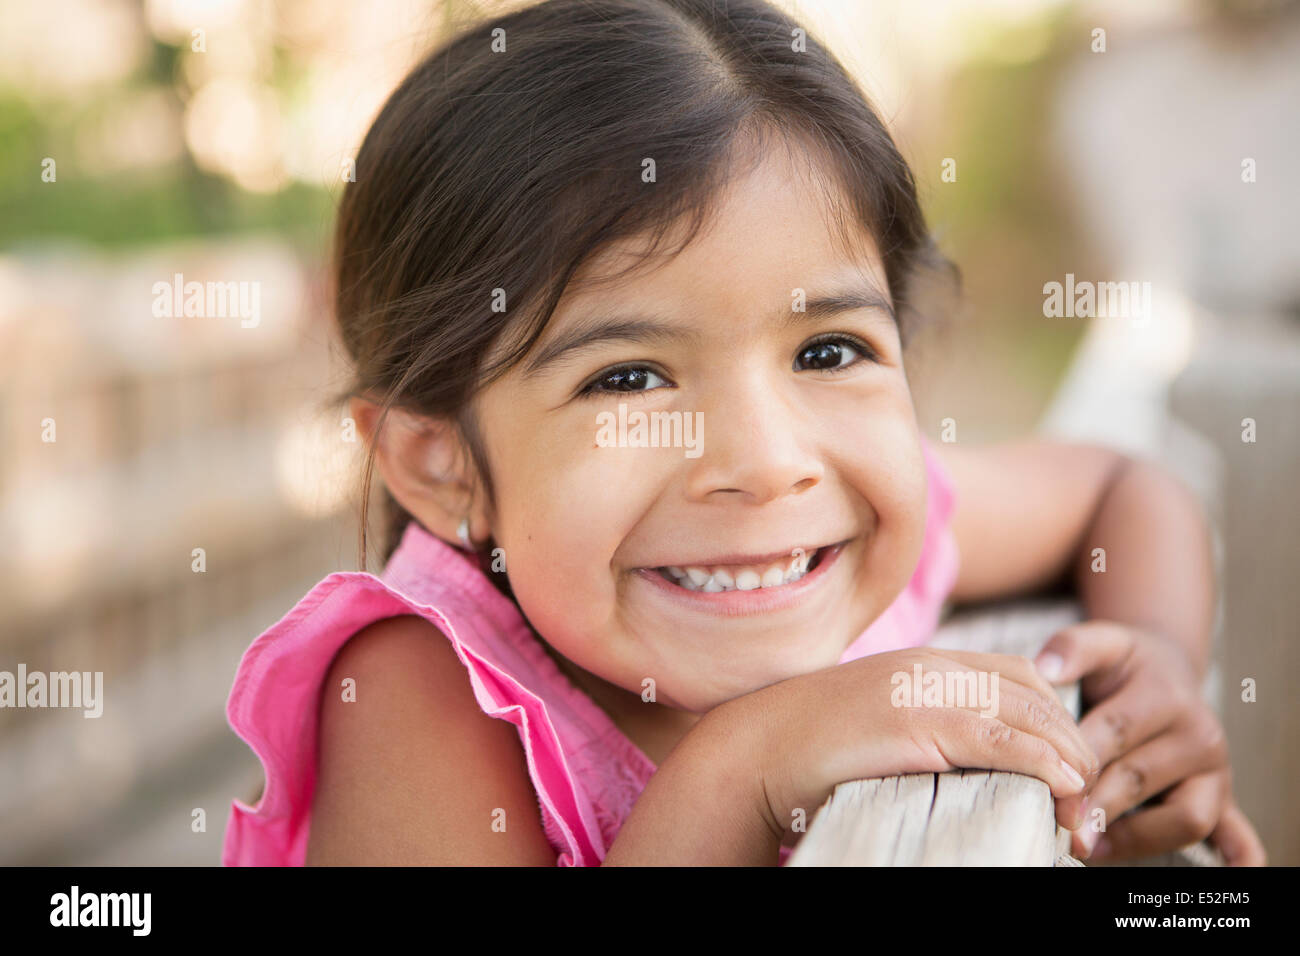 Ein kleines Kind, ein Mädchen in die Kamera Lächeln. Stockfoto